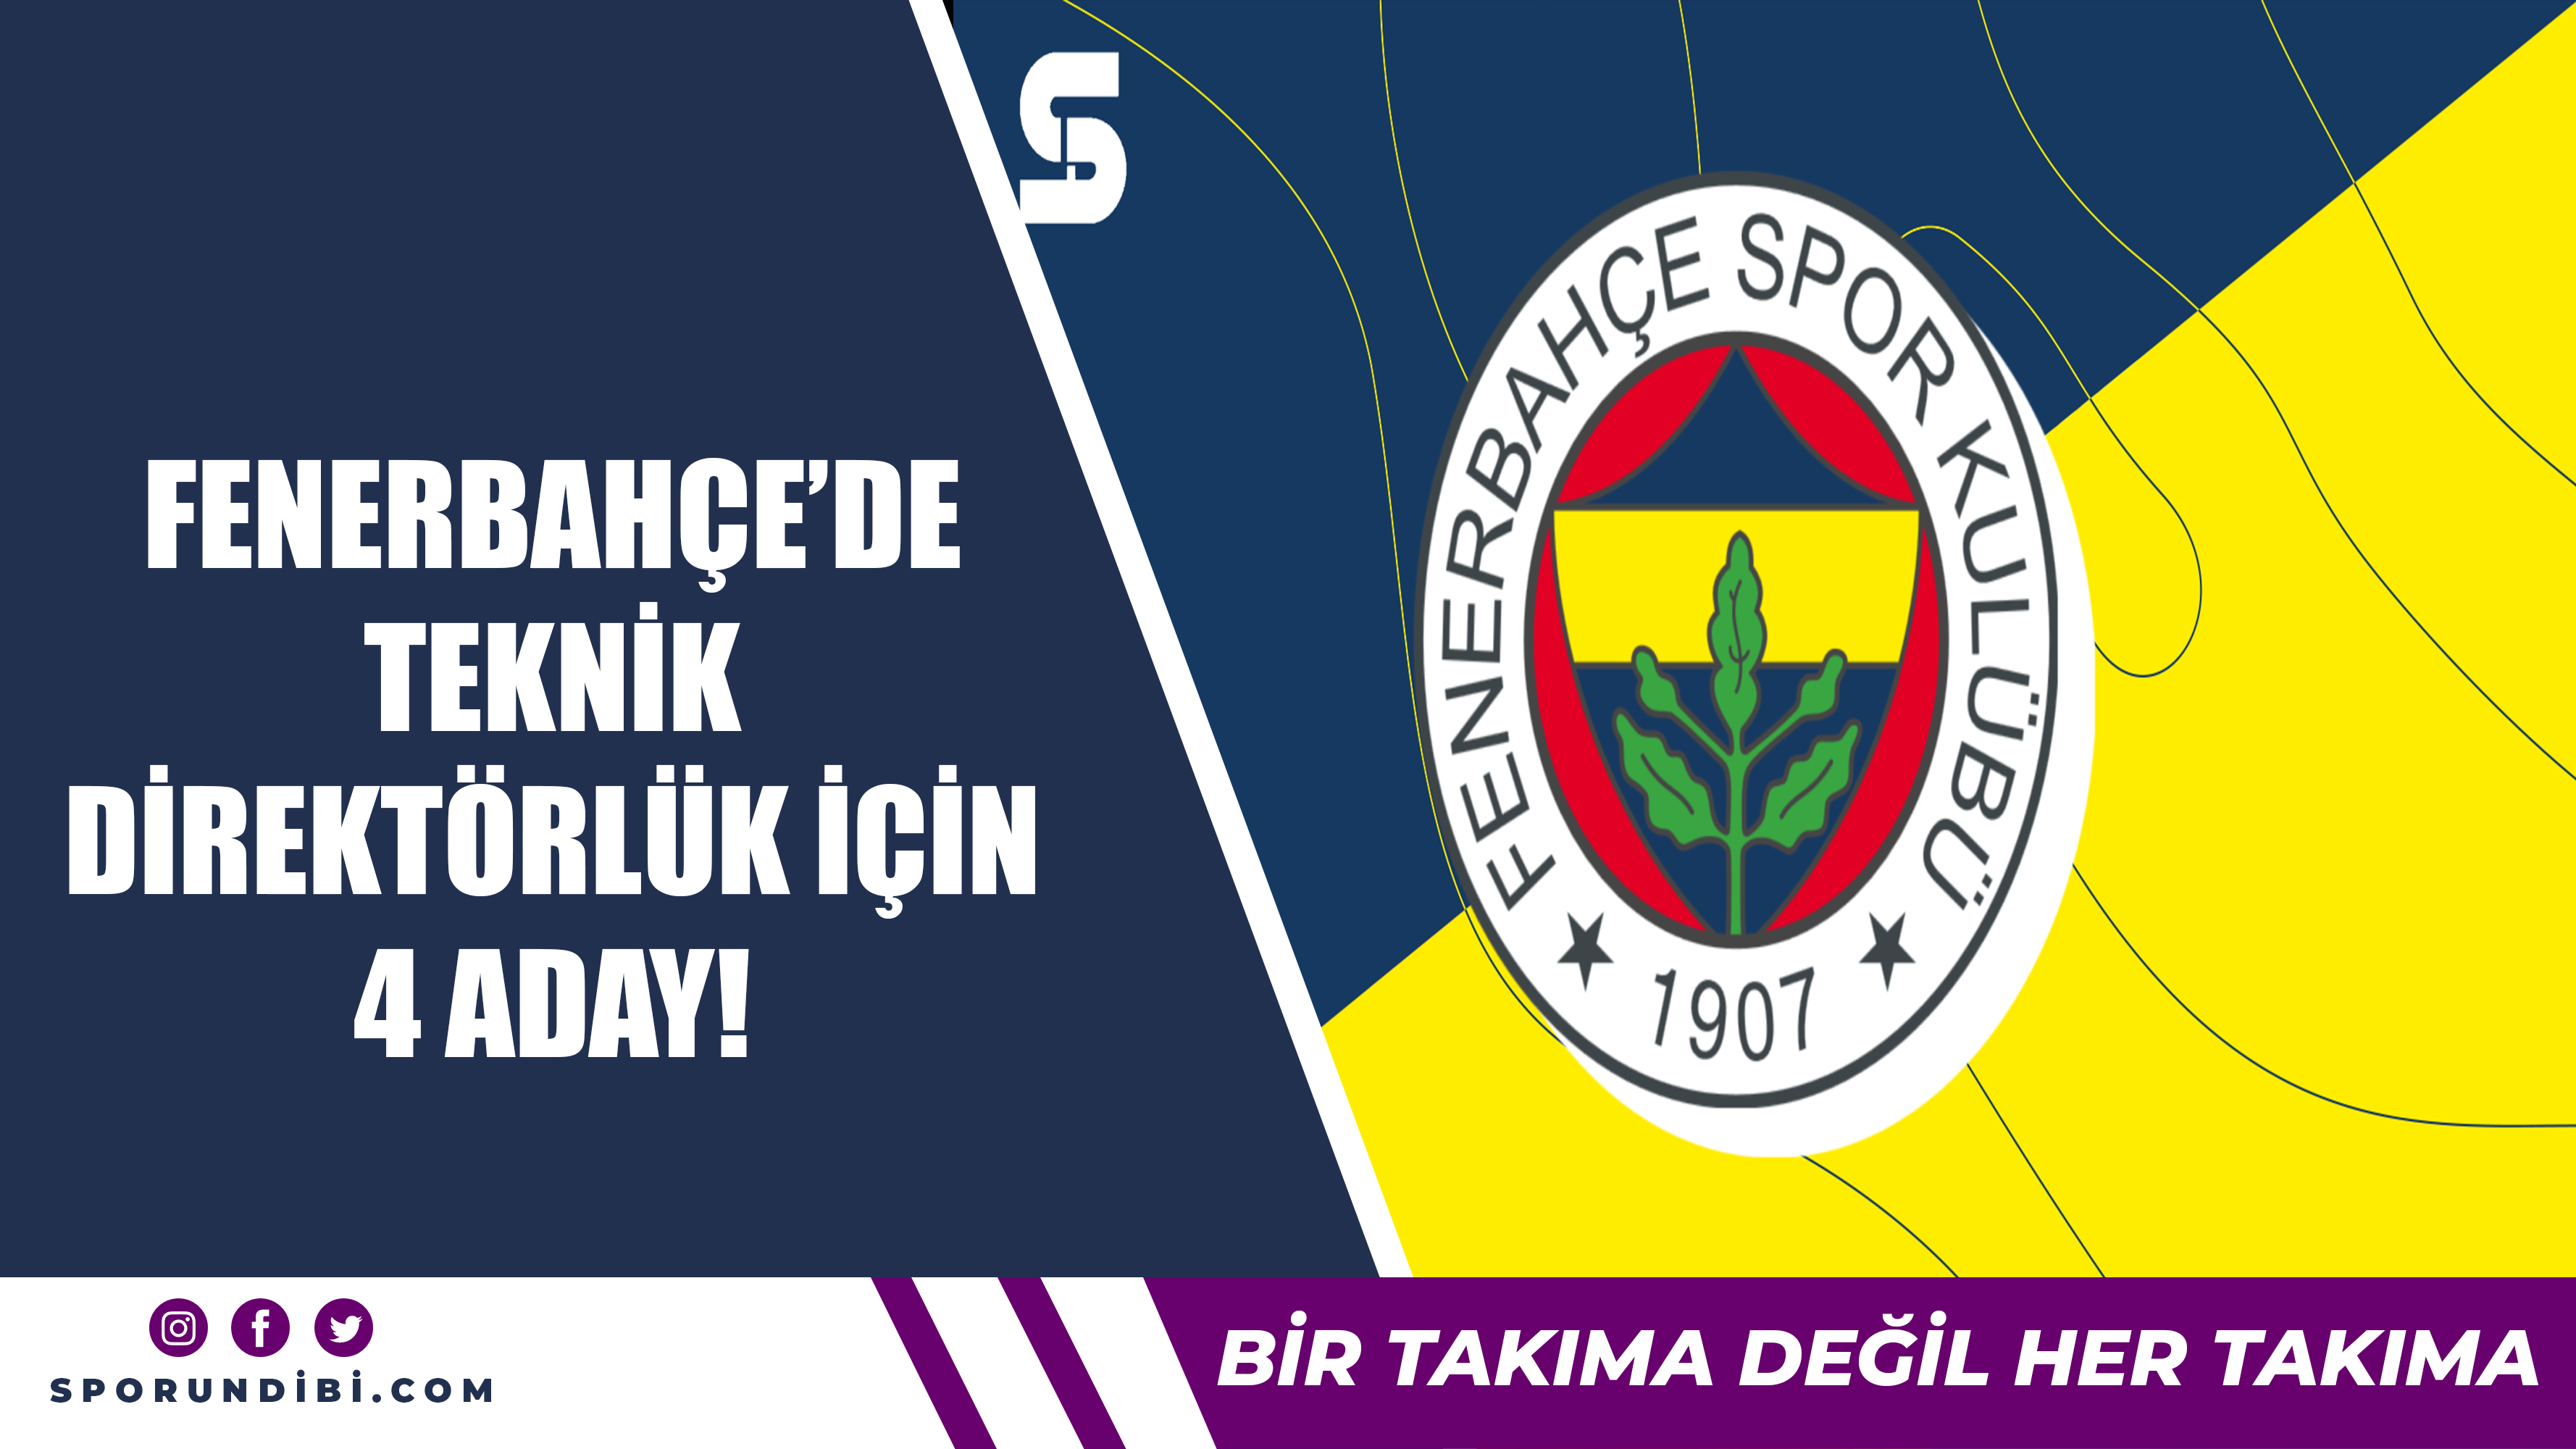 Fenerbahçe'de teknik direktörlük için 4 aday!